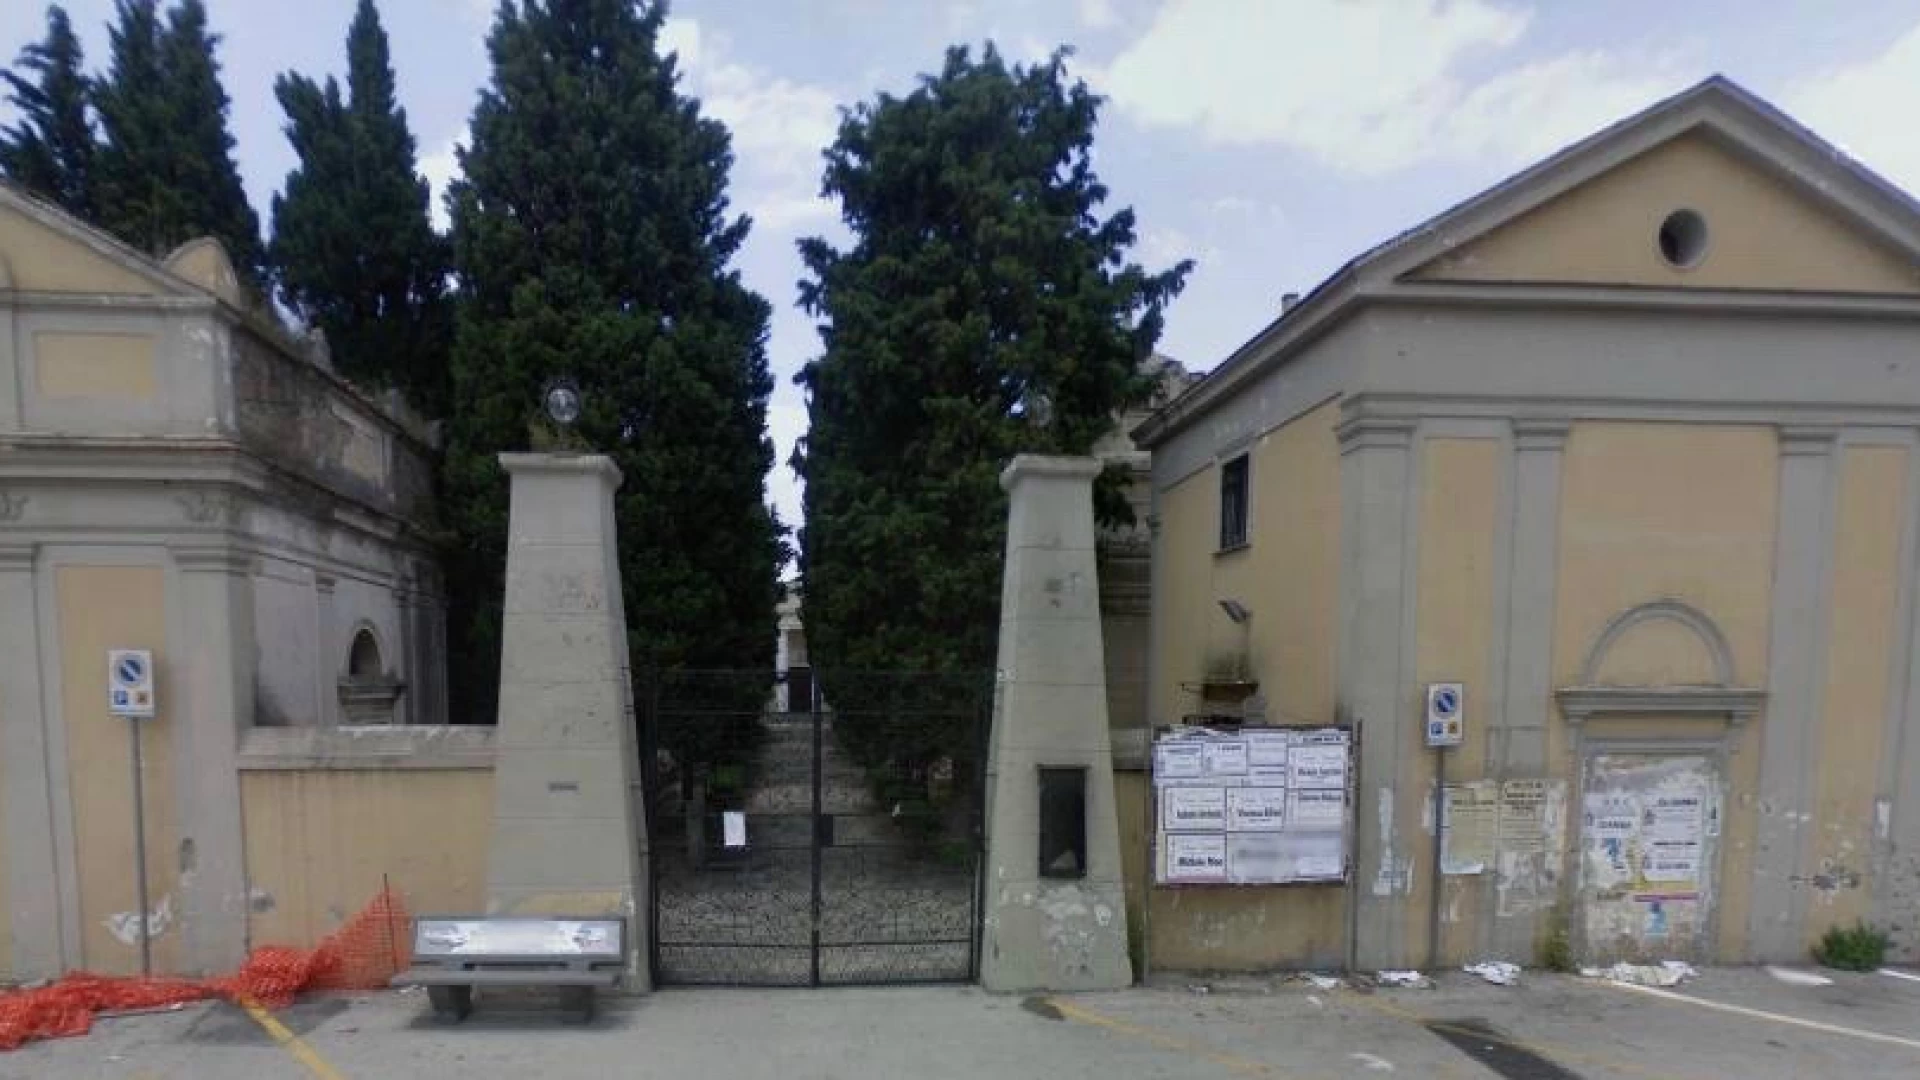 Cimiteri comunali, le precisazioni del Comune di Isernia sulla chiusura e sulla riapertura delle strutture.